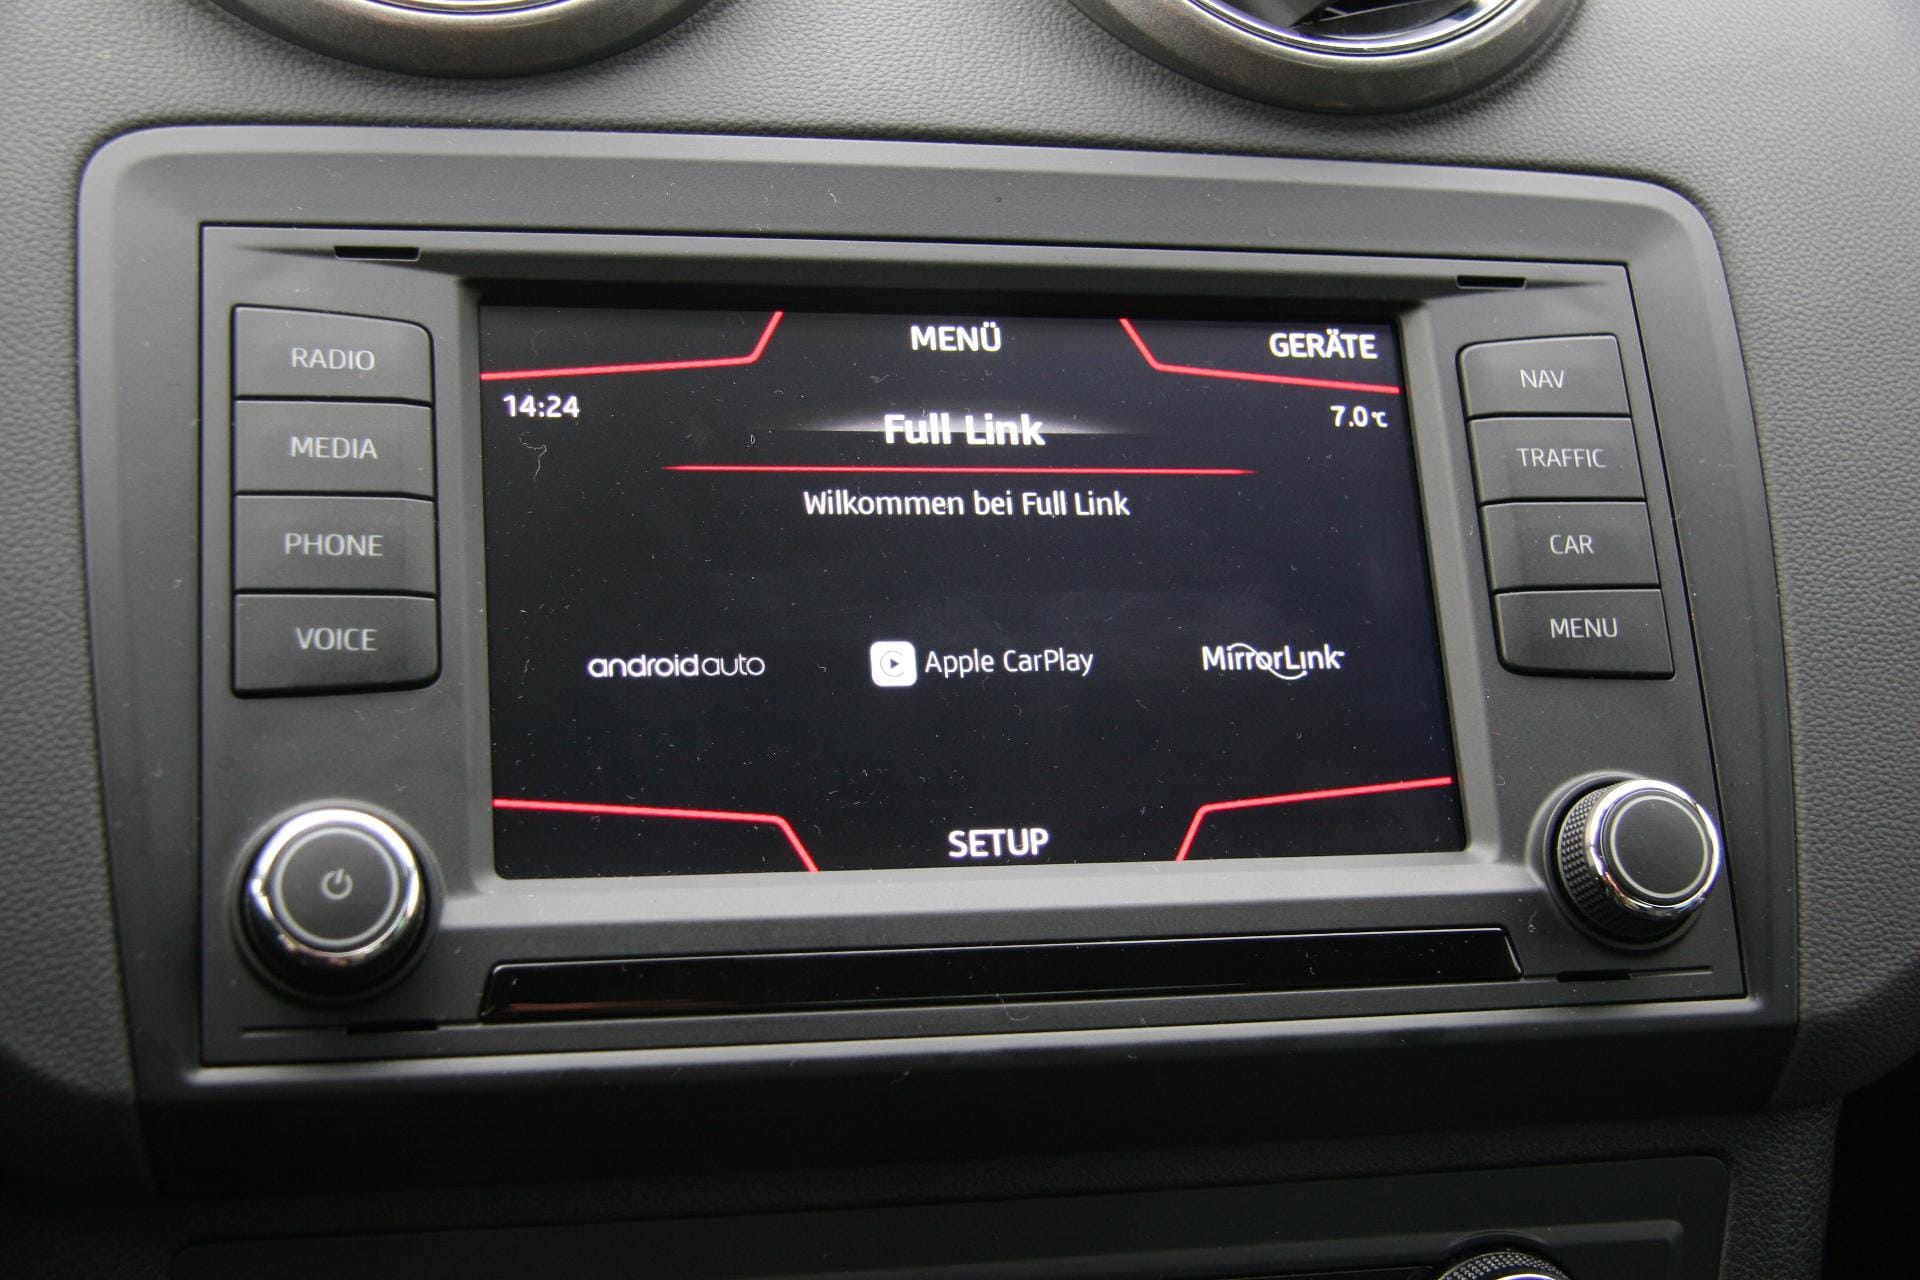 Apple Car Play, Android Auto oder Mirror Link, Bluetooth, Gestensteuerung und Sprachbedienung - so wird der Ibiza laut Hersteller "zum Bestandteil der vernetzten Welt".